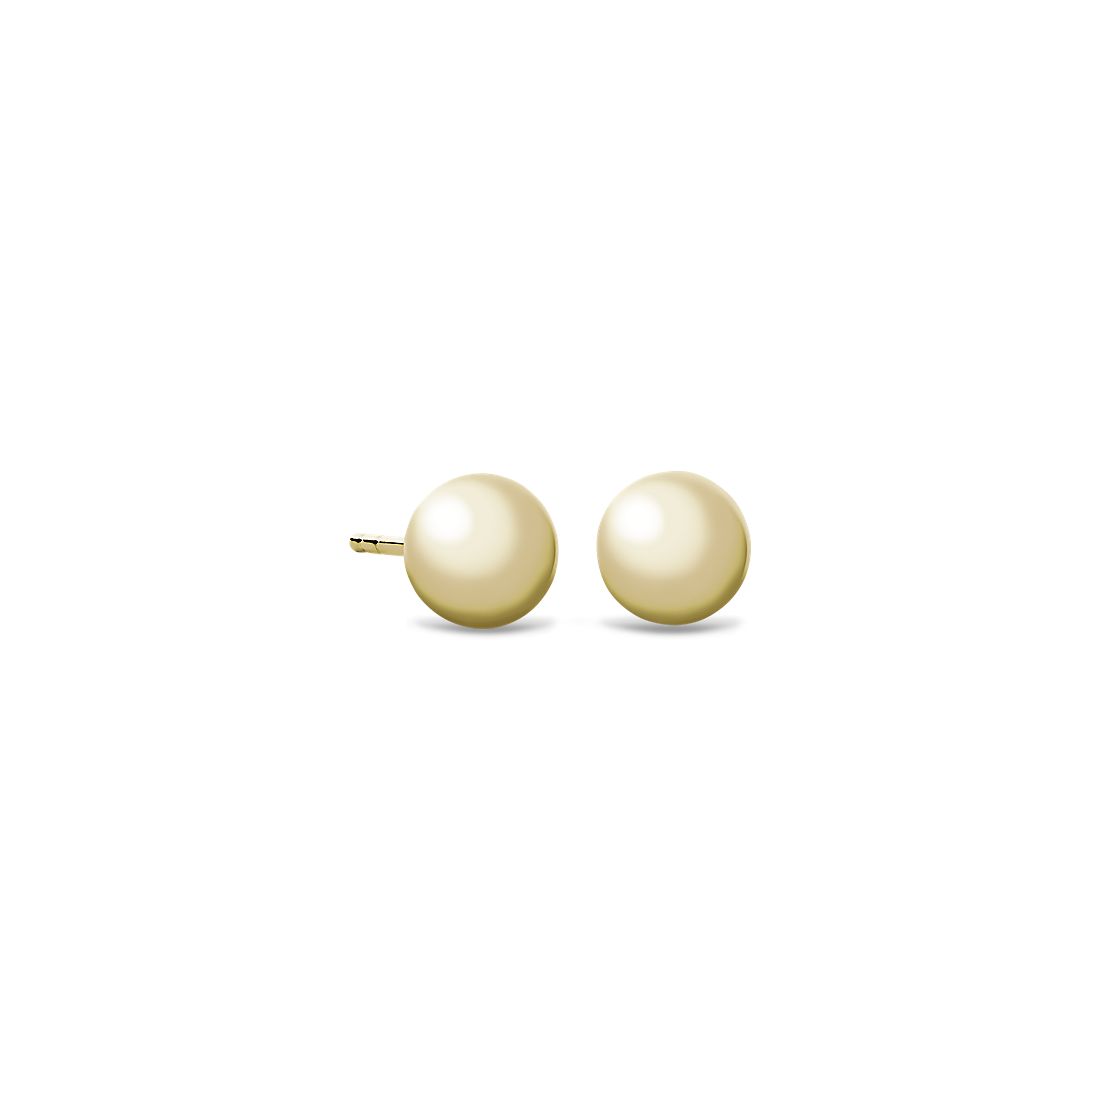 Handmade earrings Blue Beads-Balls 28 mm